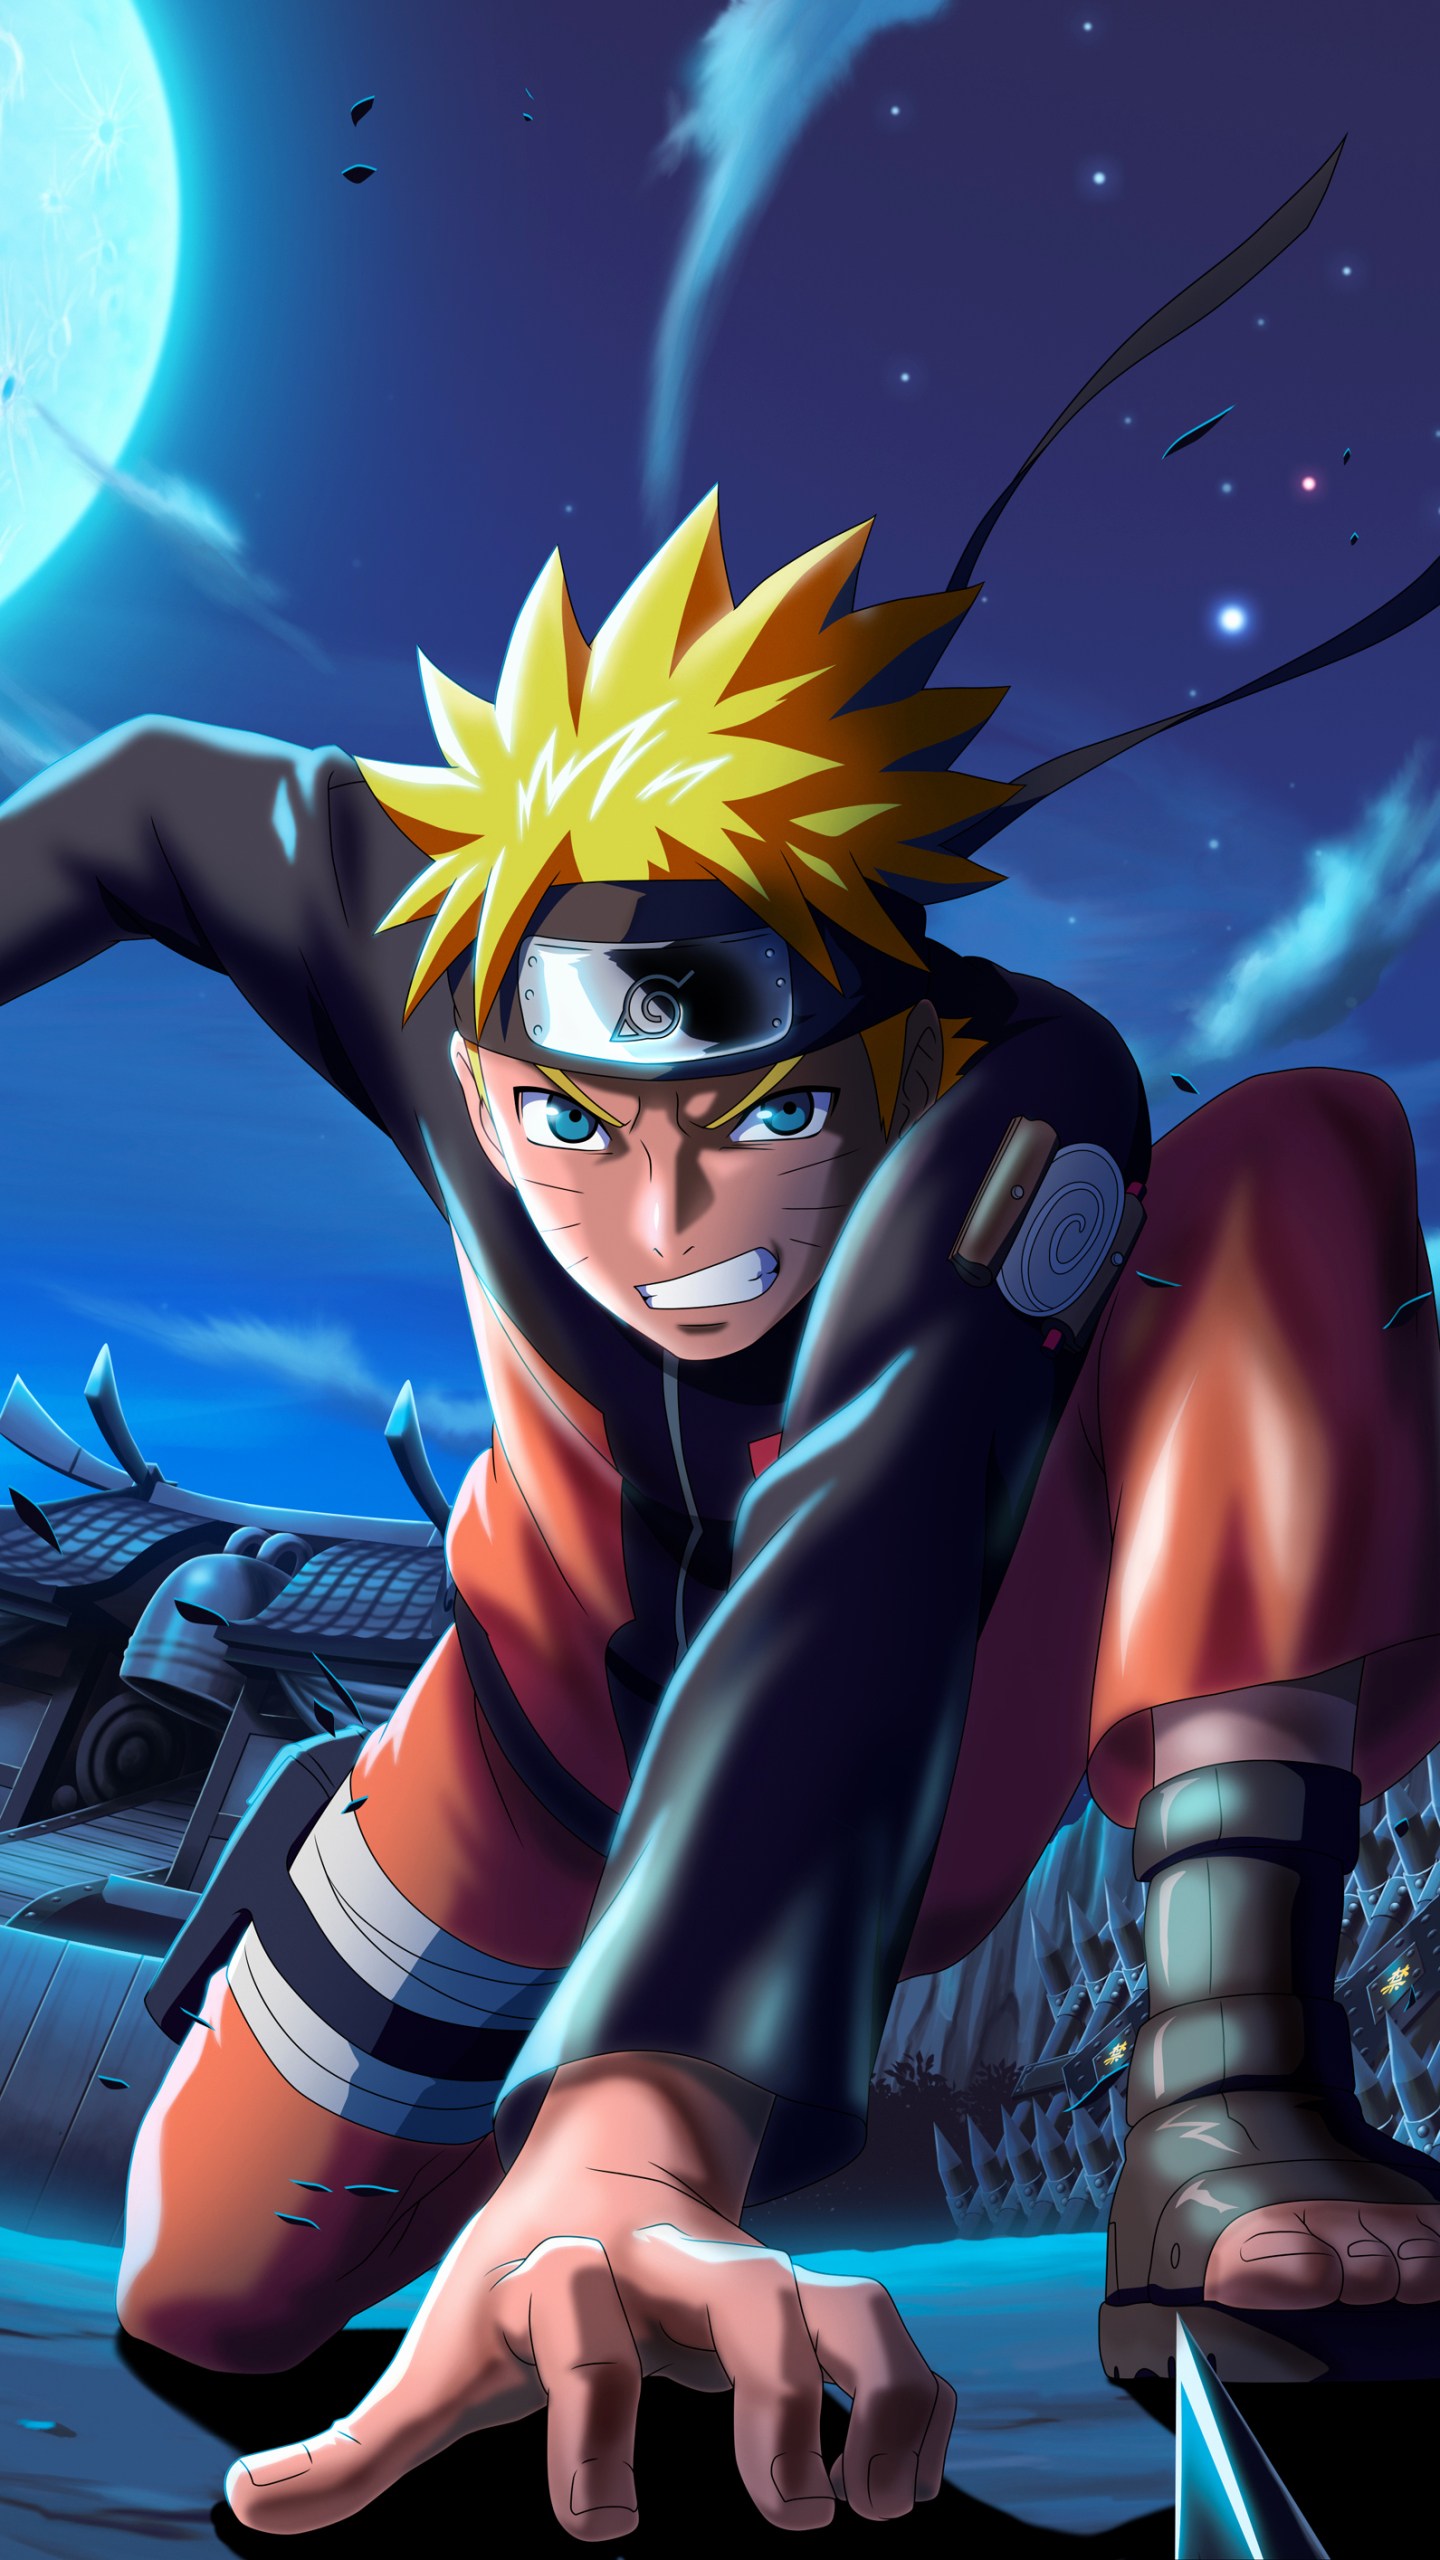 Hình nền Naruto chất lượng: Tận hưởng bộ sưu tập hình nền Naruto chất lượng cao với những hình ảnh ấn tượng nhất. Với màu sắc tươi sáng và chân thật, bạn sẽ được đắm chìm trong thế giới Naruto, với những trận chiến đấu mãnh liệt và hành trình đầy thử thách của các nhân vật trong series anime nổi tiếng này.